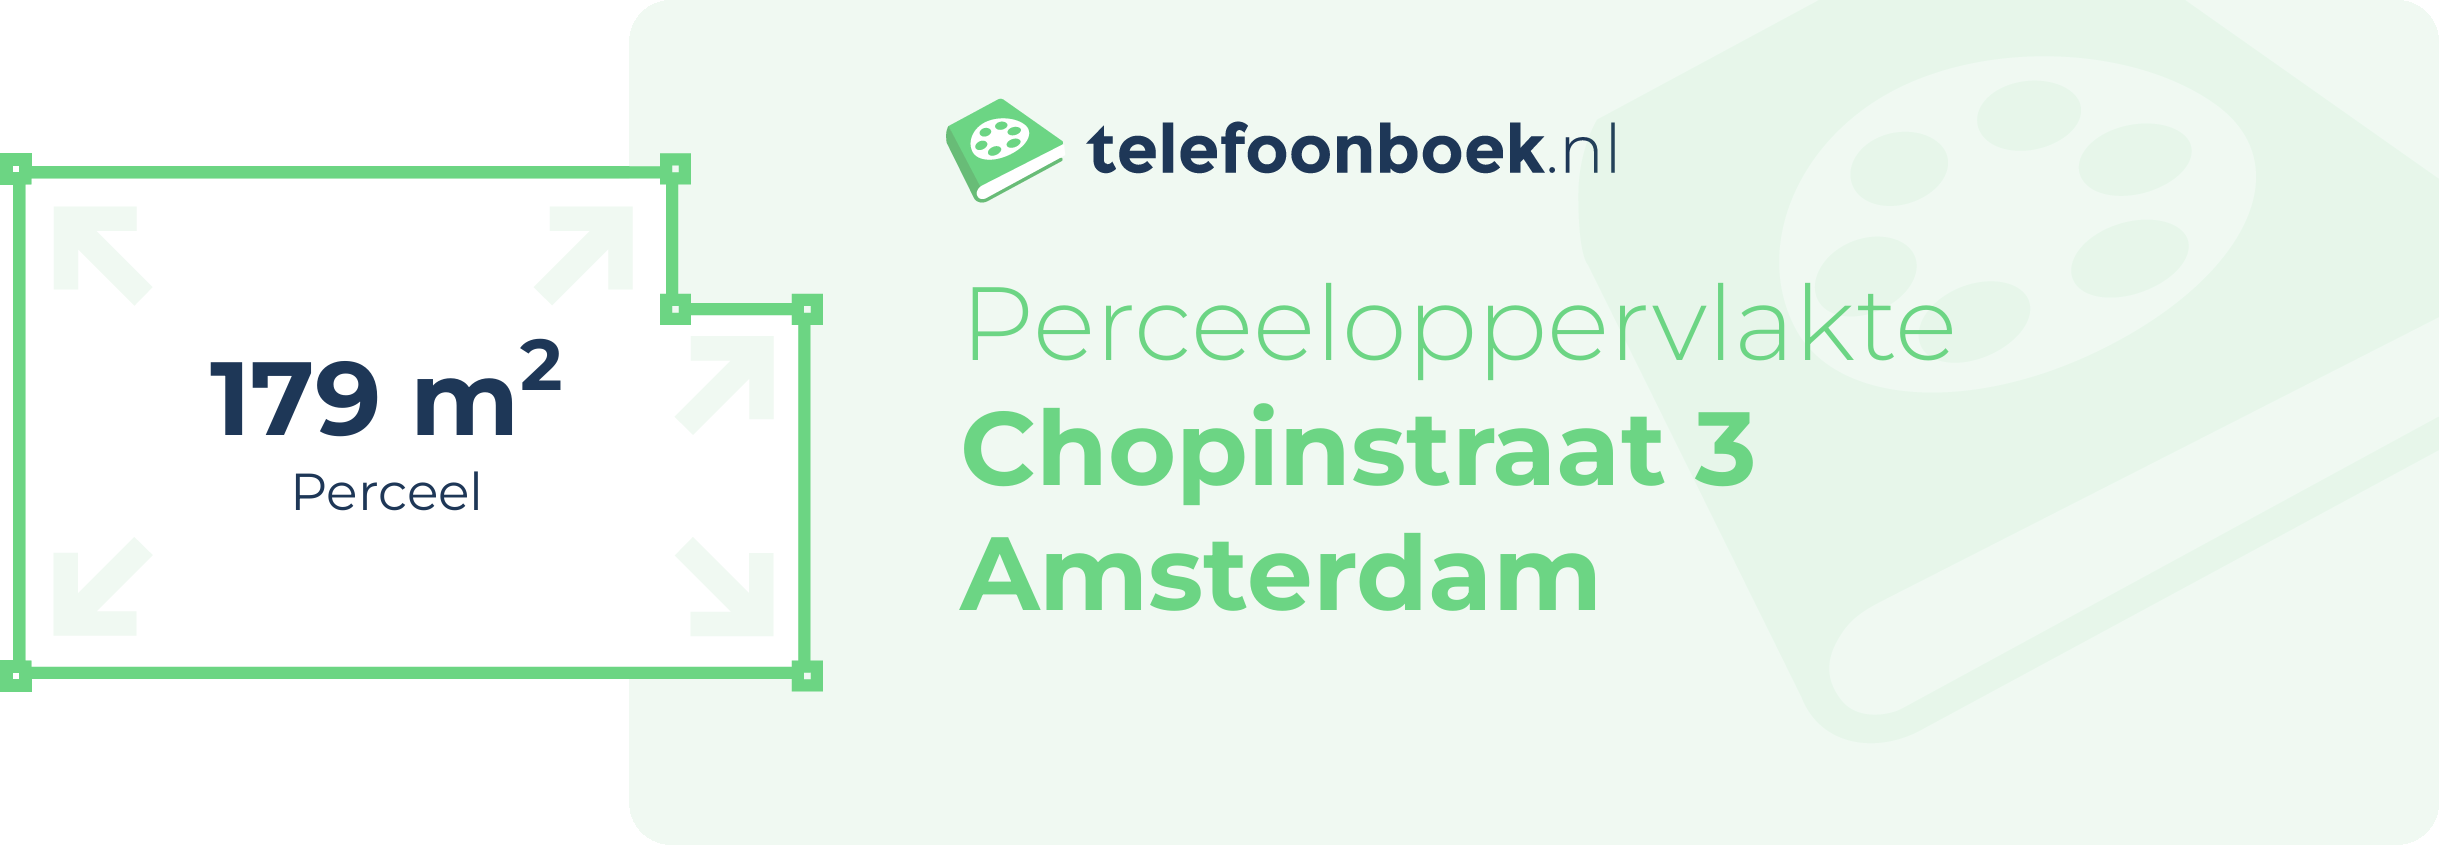 Perceeloppervlakte Chopinstraat 3 Amsterdam